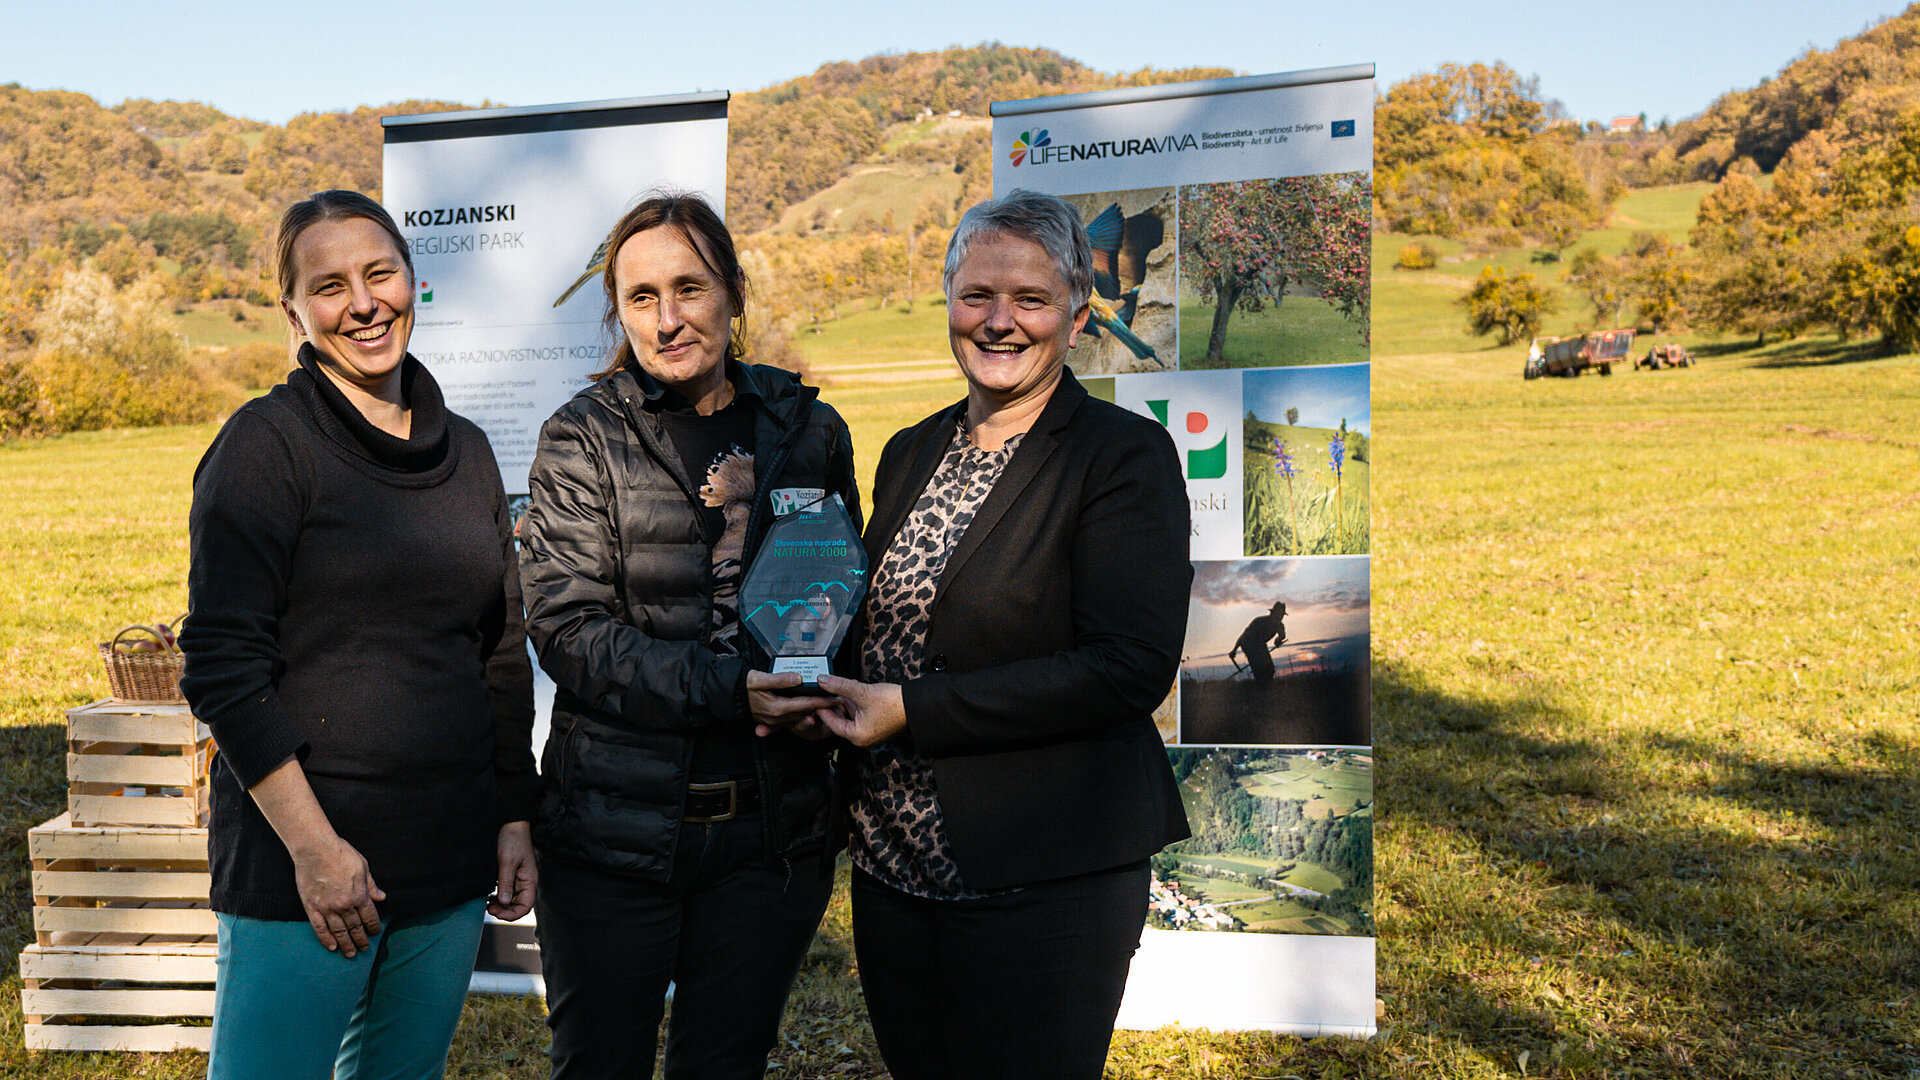 Kozjanski regijski park, zmagovalec prve slovenske nagrade Natura 2000 v kategoriji "Varstvo vrst in habitatnih tipov na območjih Nature 2000 v Sloveniji" (foto: Zavod Štirna)